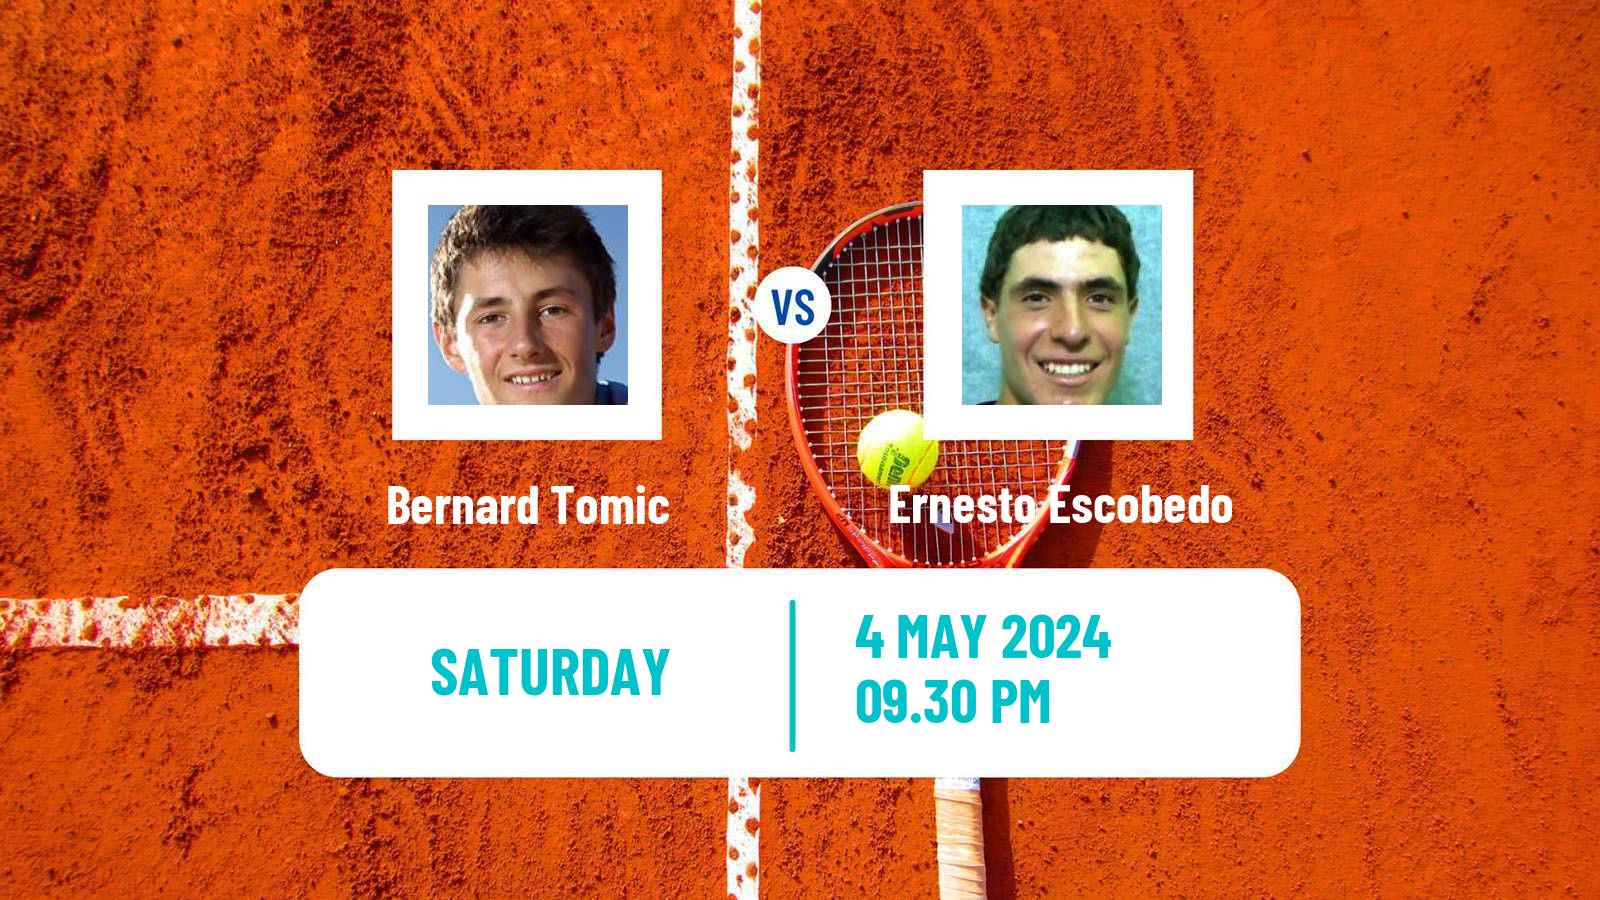 Tennis ITF M25 Xalapa Men Bernard Tomic - Ernesto Escobedo